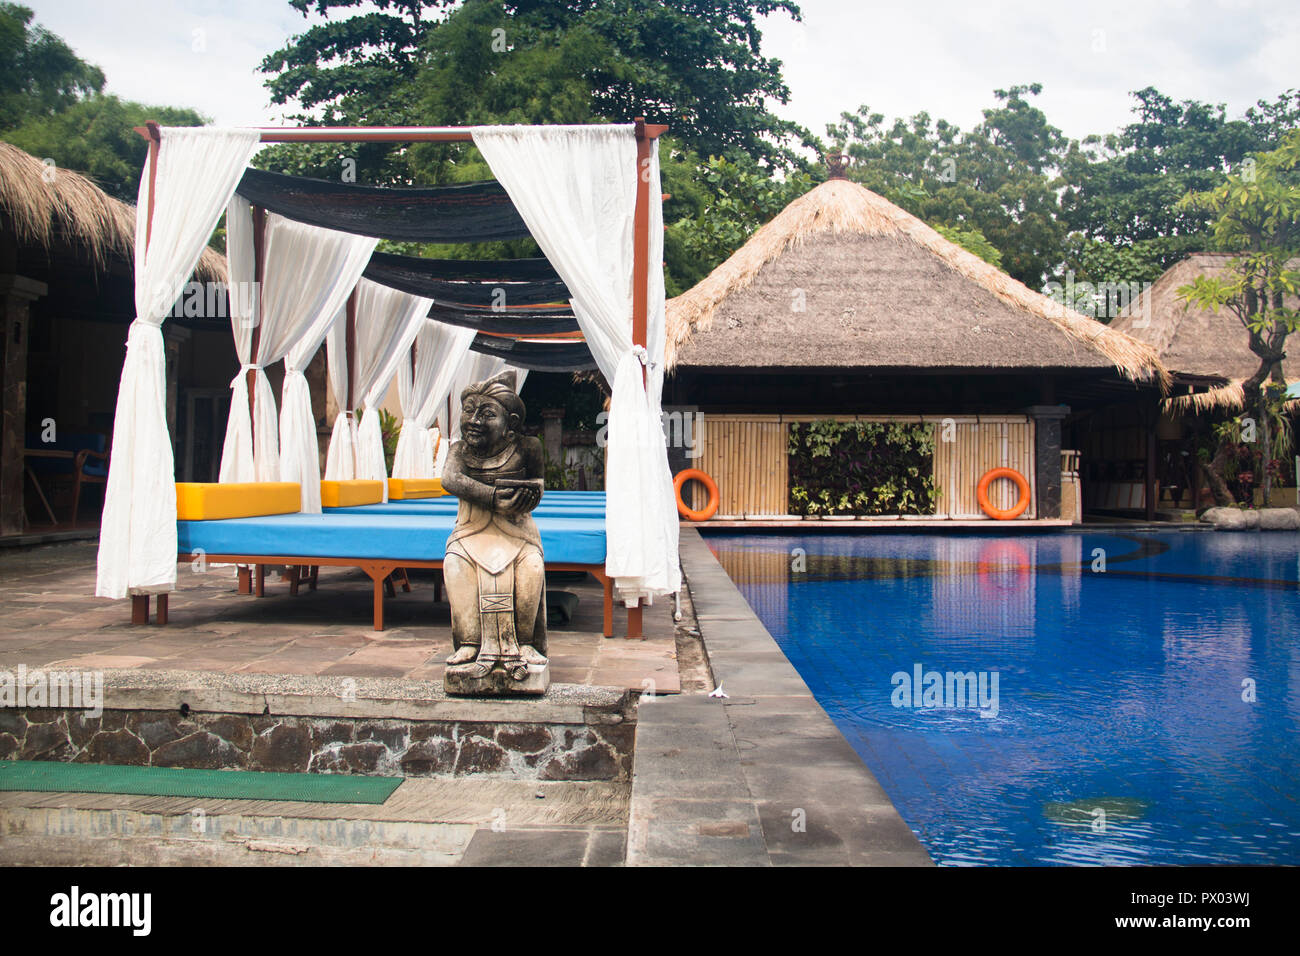 Albergo elegante camera con piscina privata in Pemuteran a Bali, in Indonesia Foto Stock